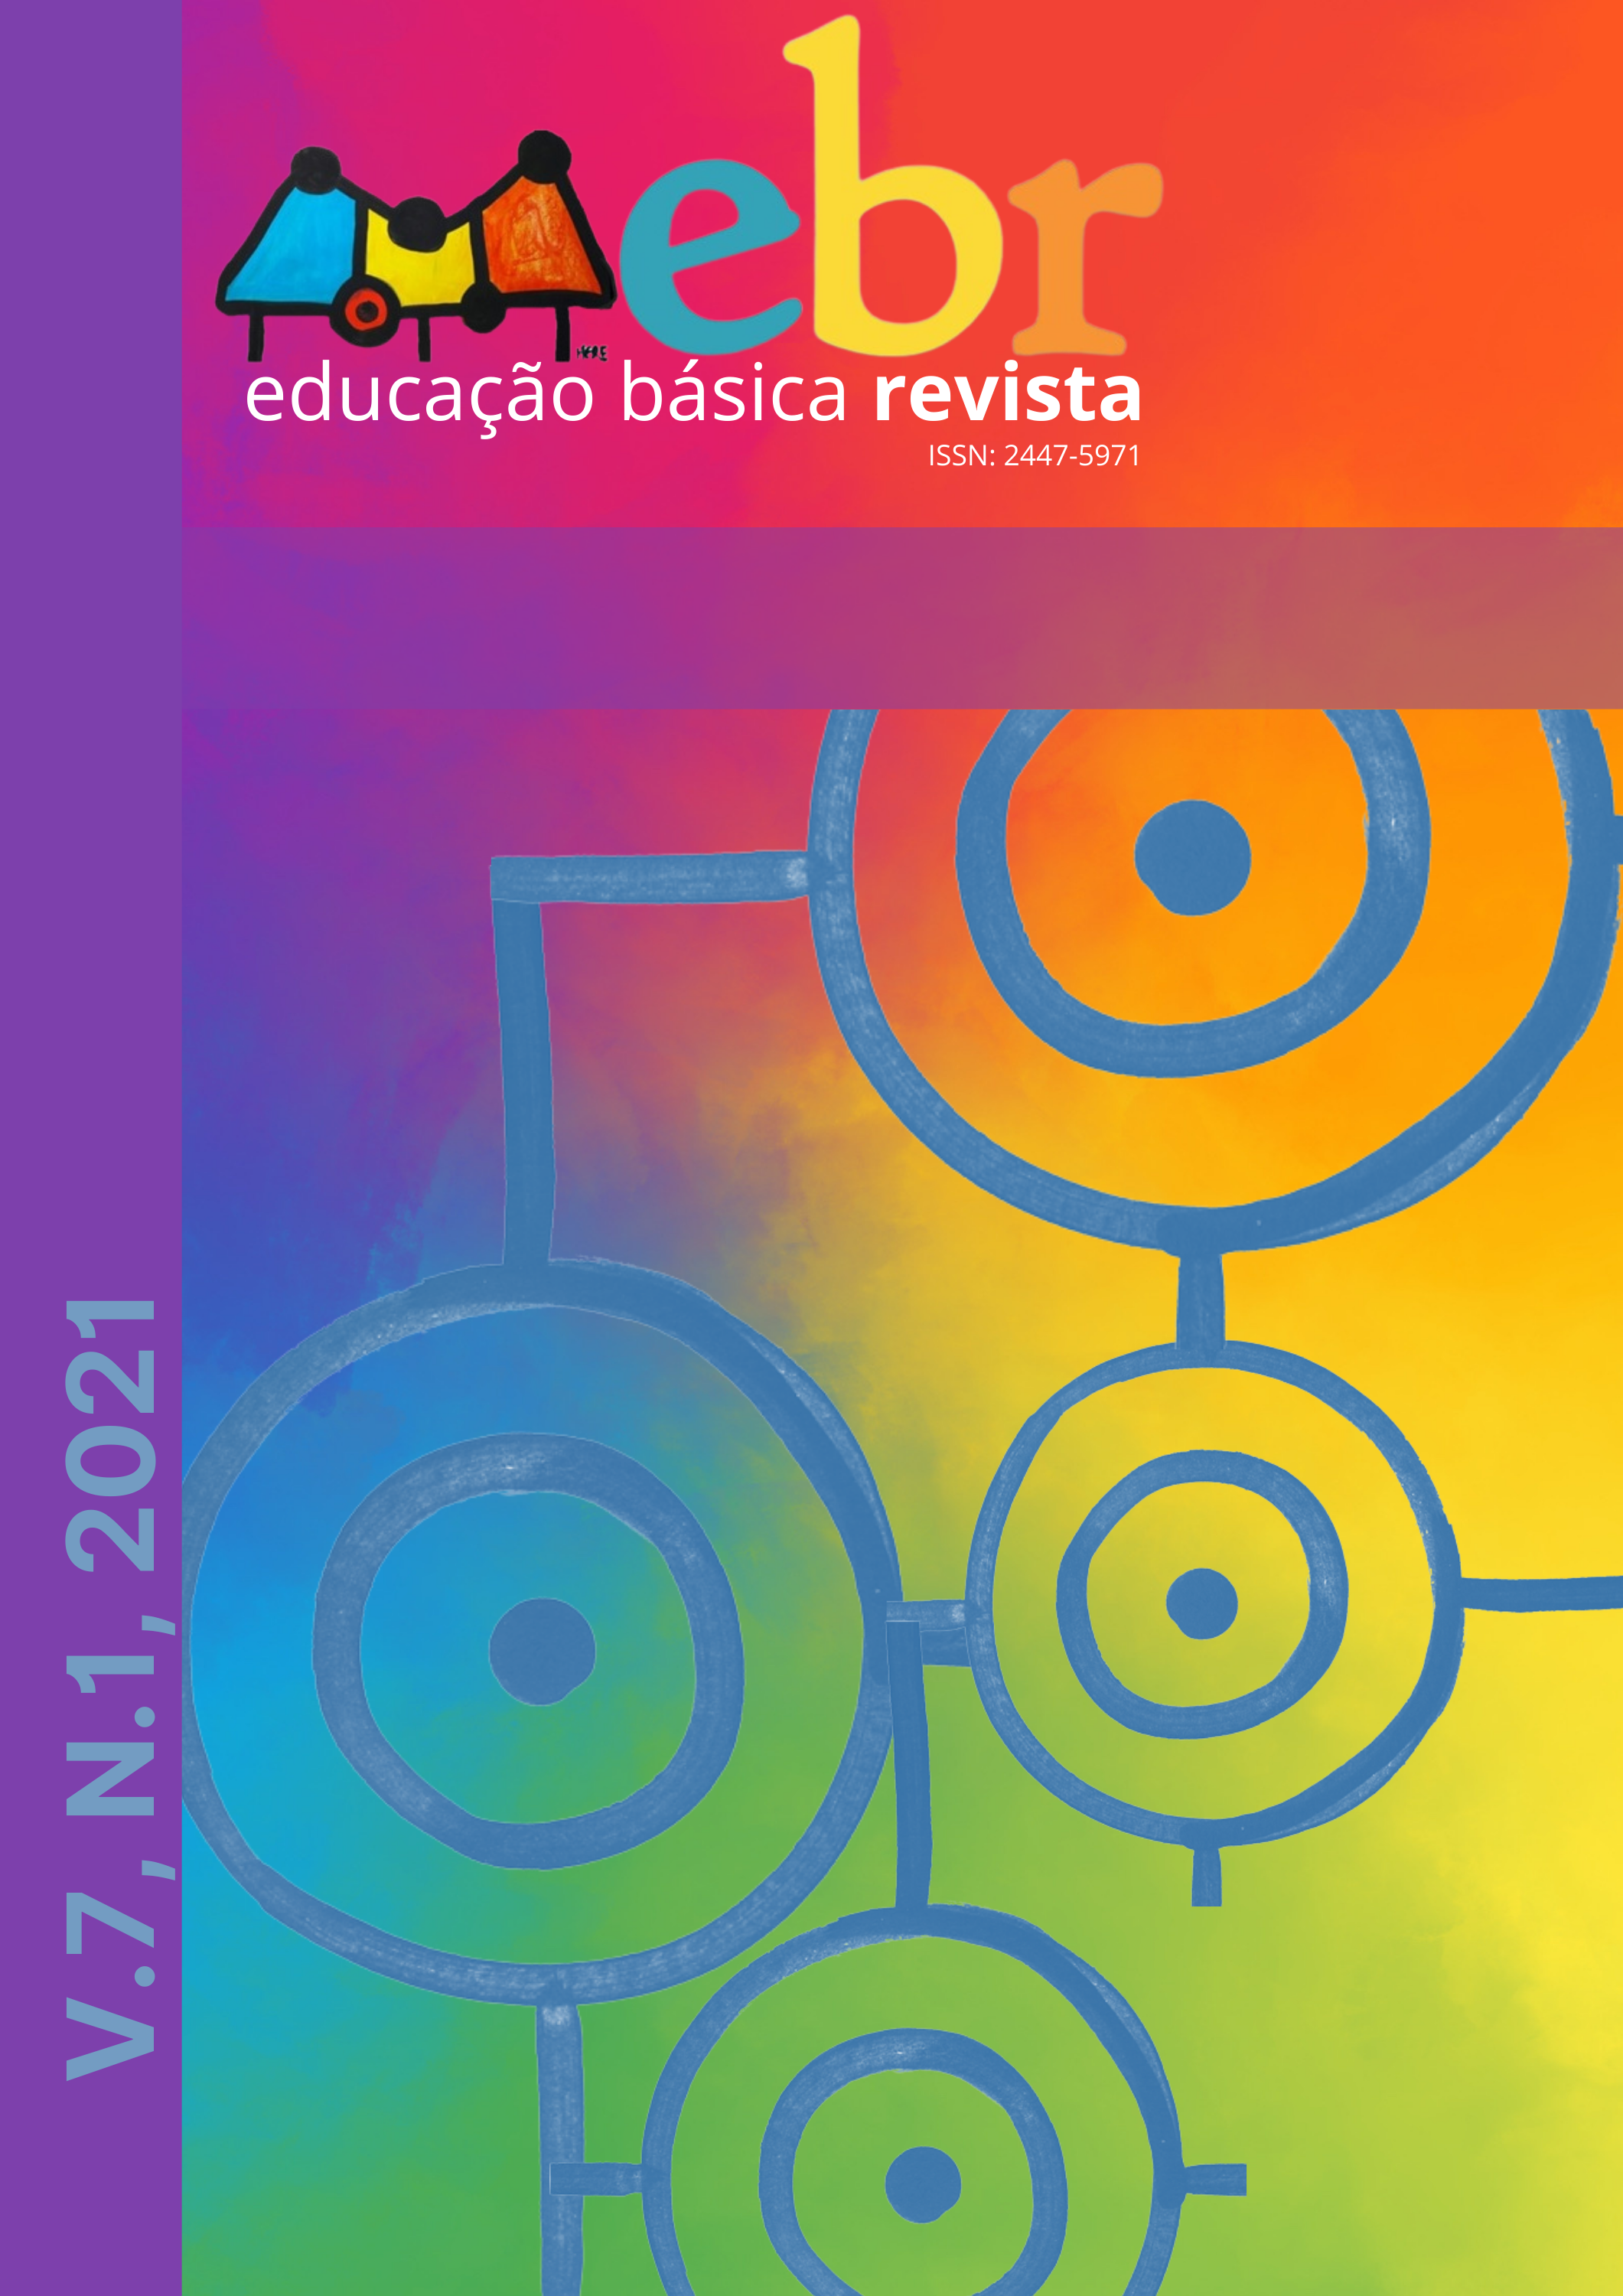 Revista Educação Pública - Jogos pedagógicos no ensino de Matemática: Uma  experiência com alunos do 6º ano do Ensino Fundamental